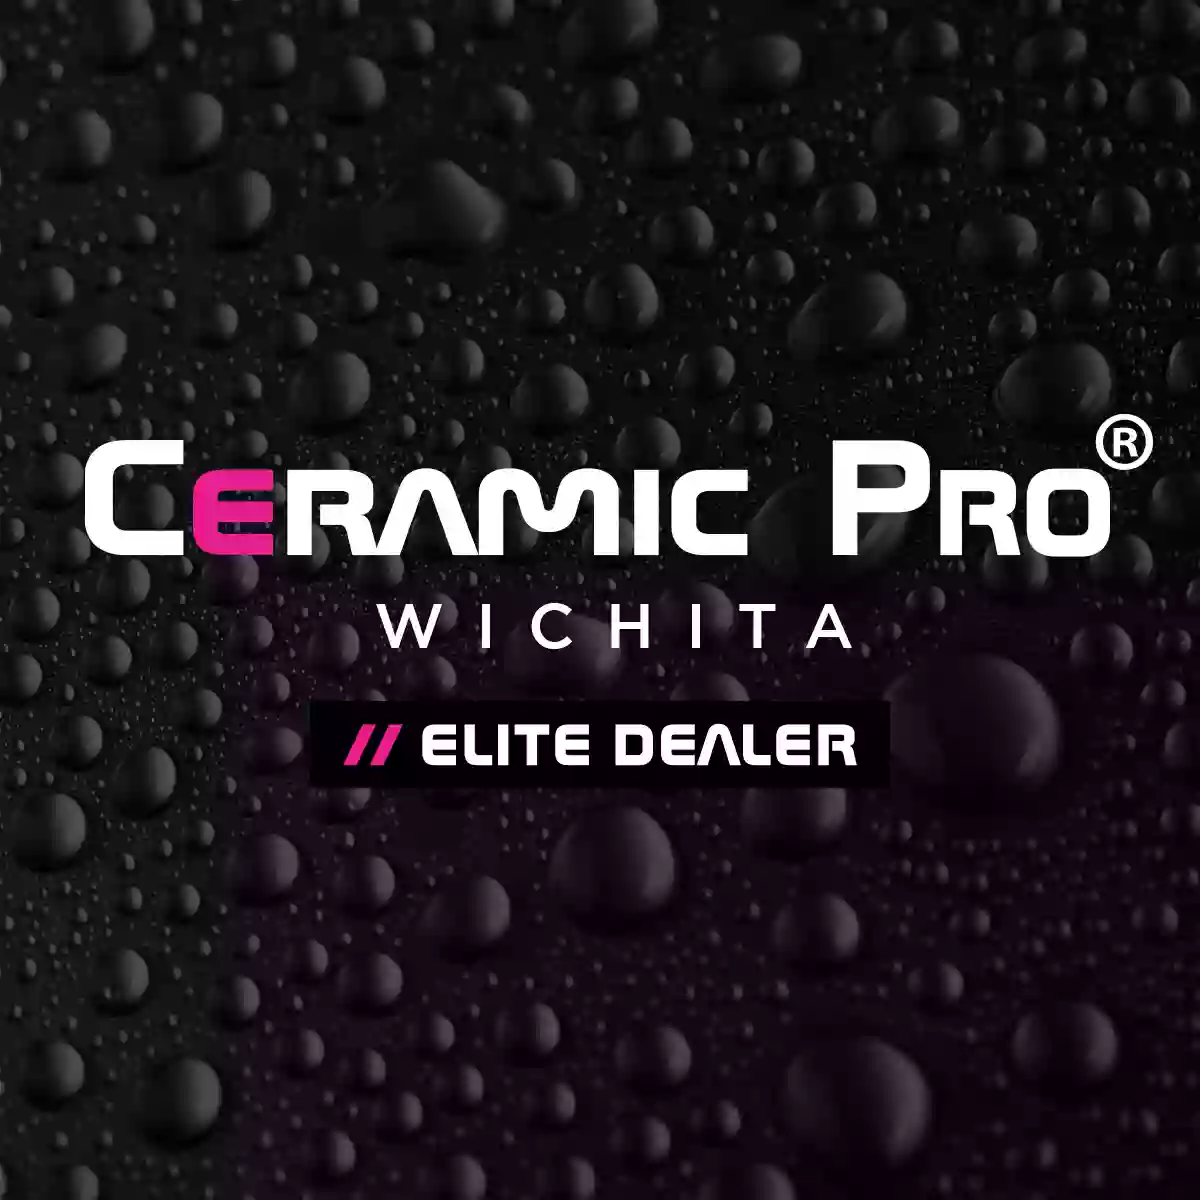 Ceramic Pro Wichita Elite Dealer / Vango Auto